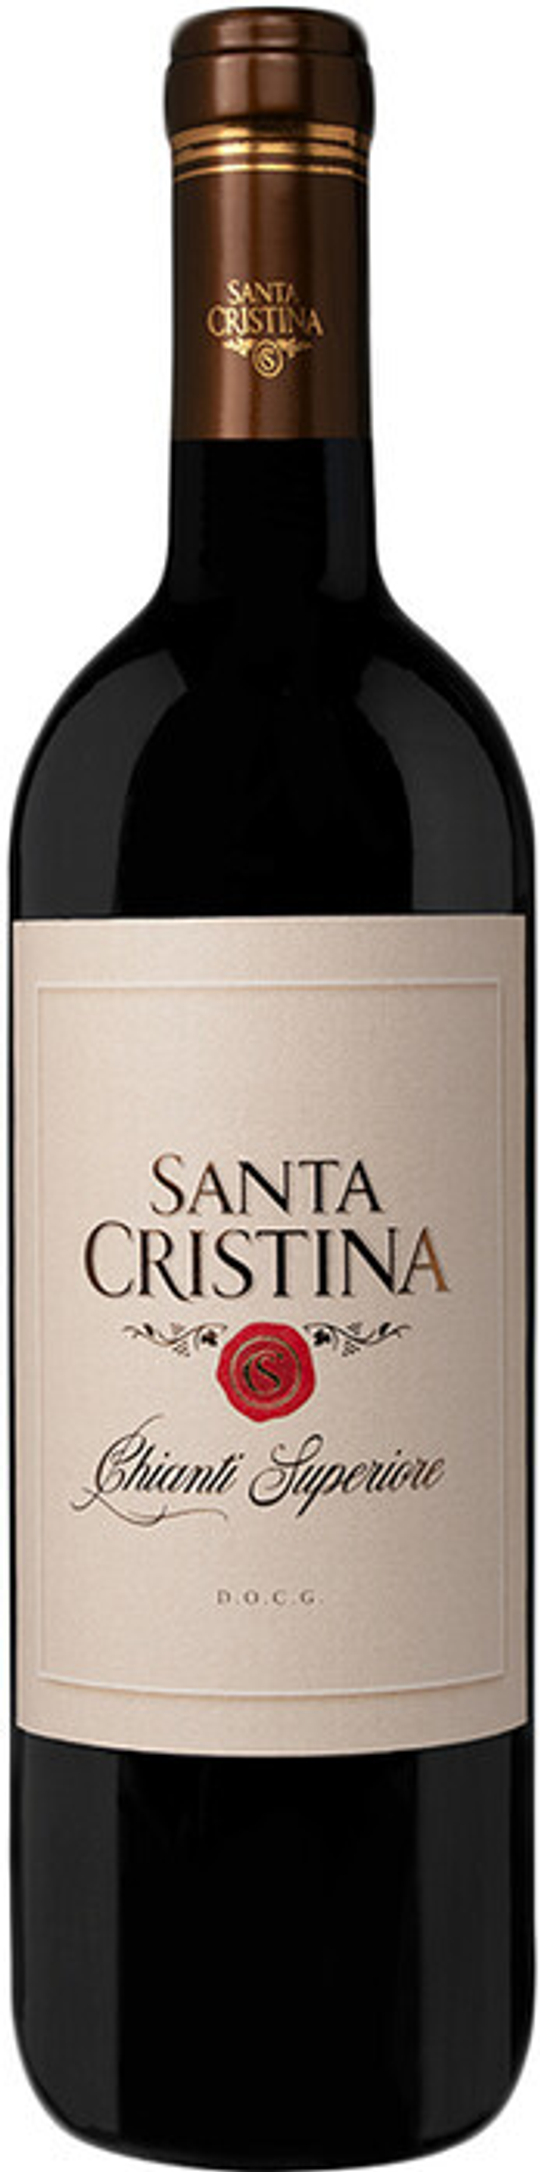 Вино Santa Cristina Chianti Superiore DOCG, 0,75 л.